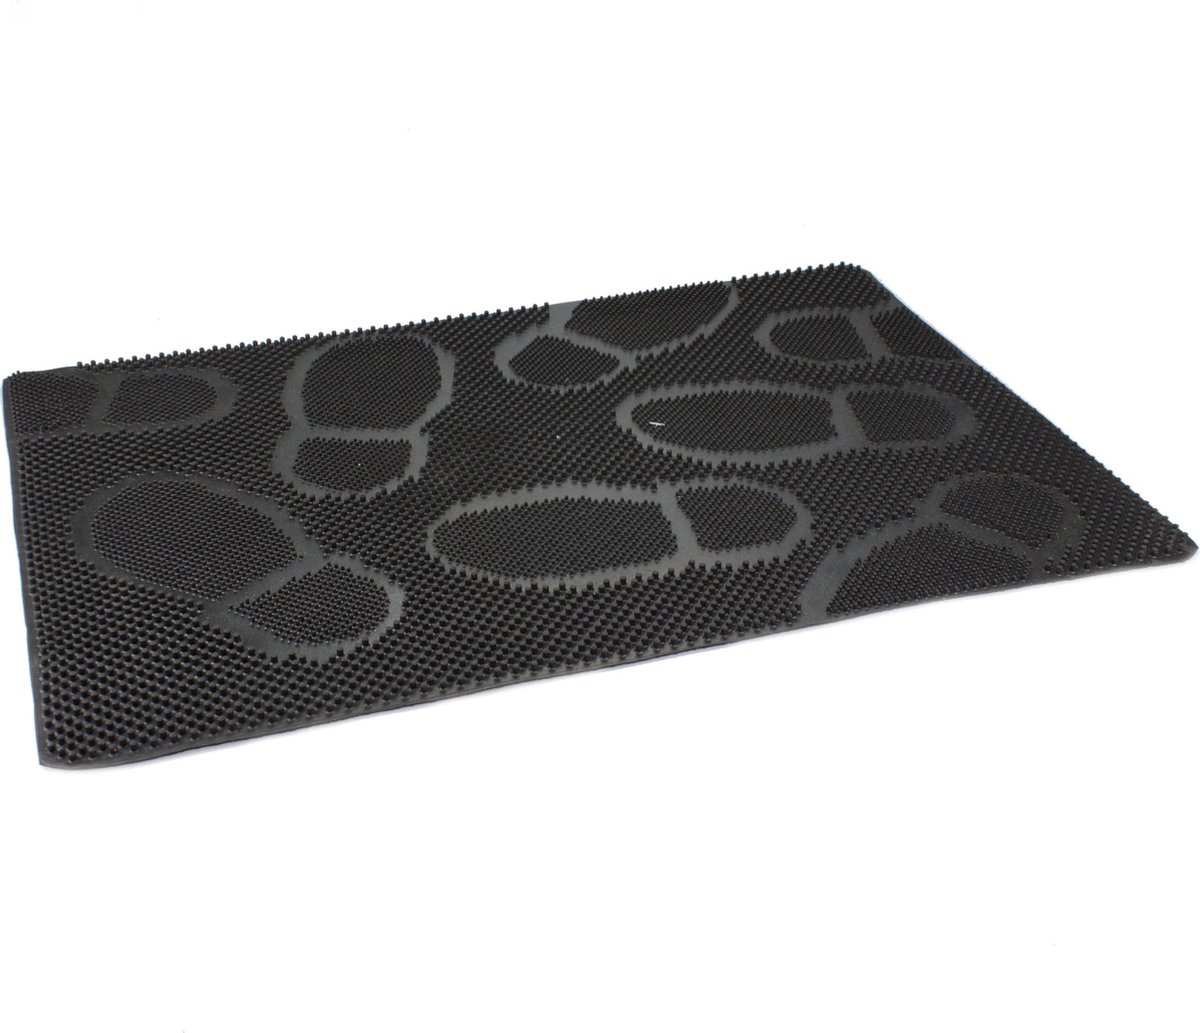 2x Stuks rubberen deurmatten/buitenmatten zwart met noppen 60 x 40 cm - Anti slip vloermatten geschikt voor binnen en buiten